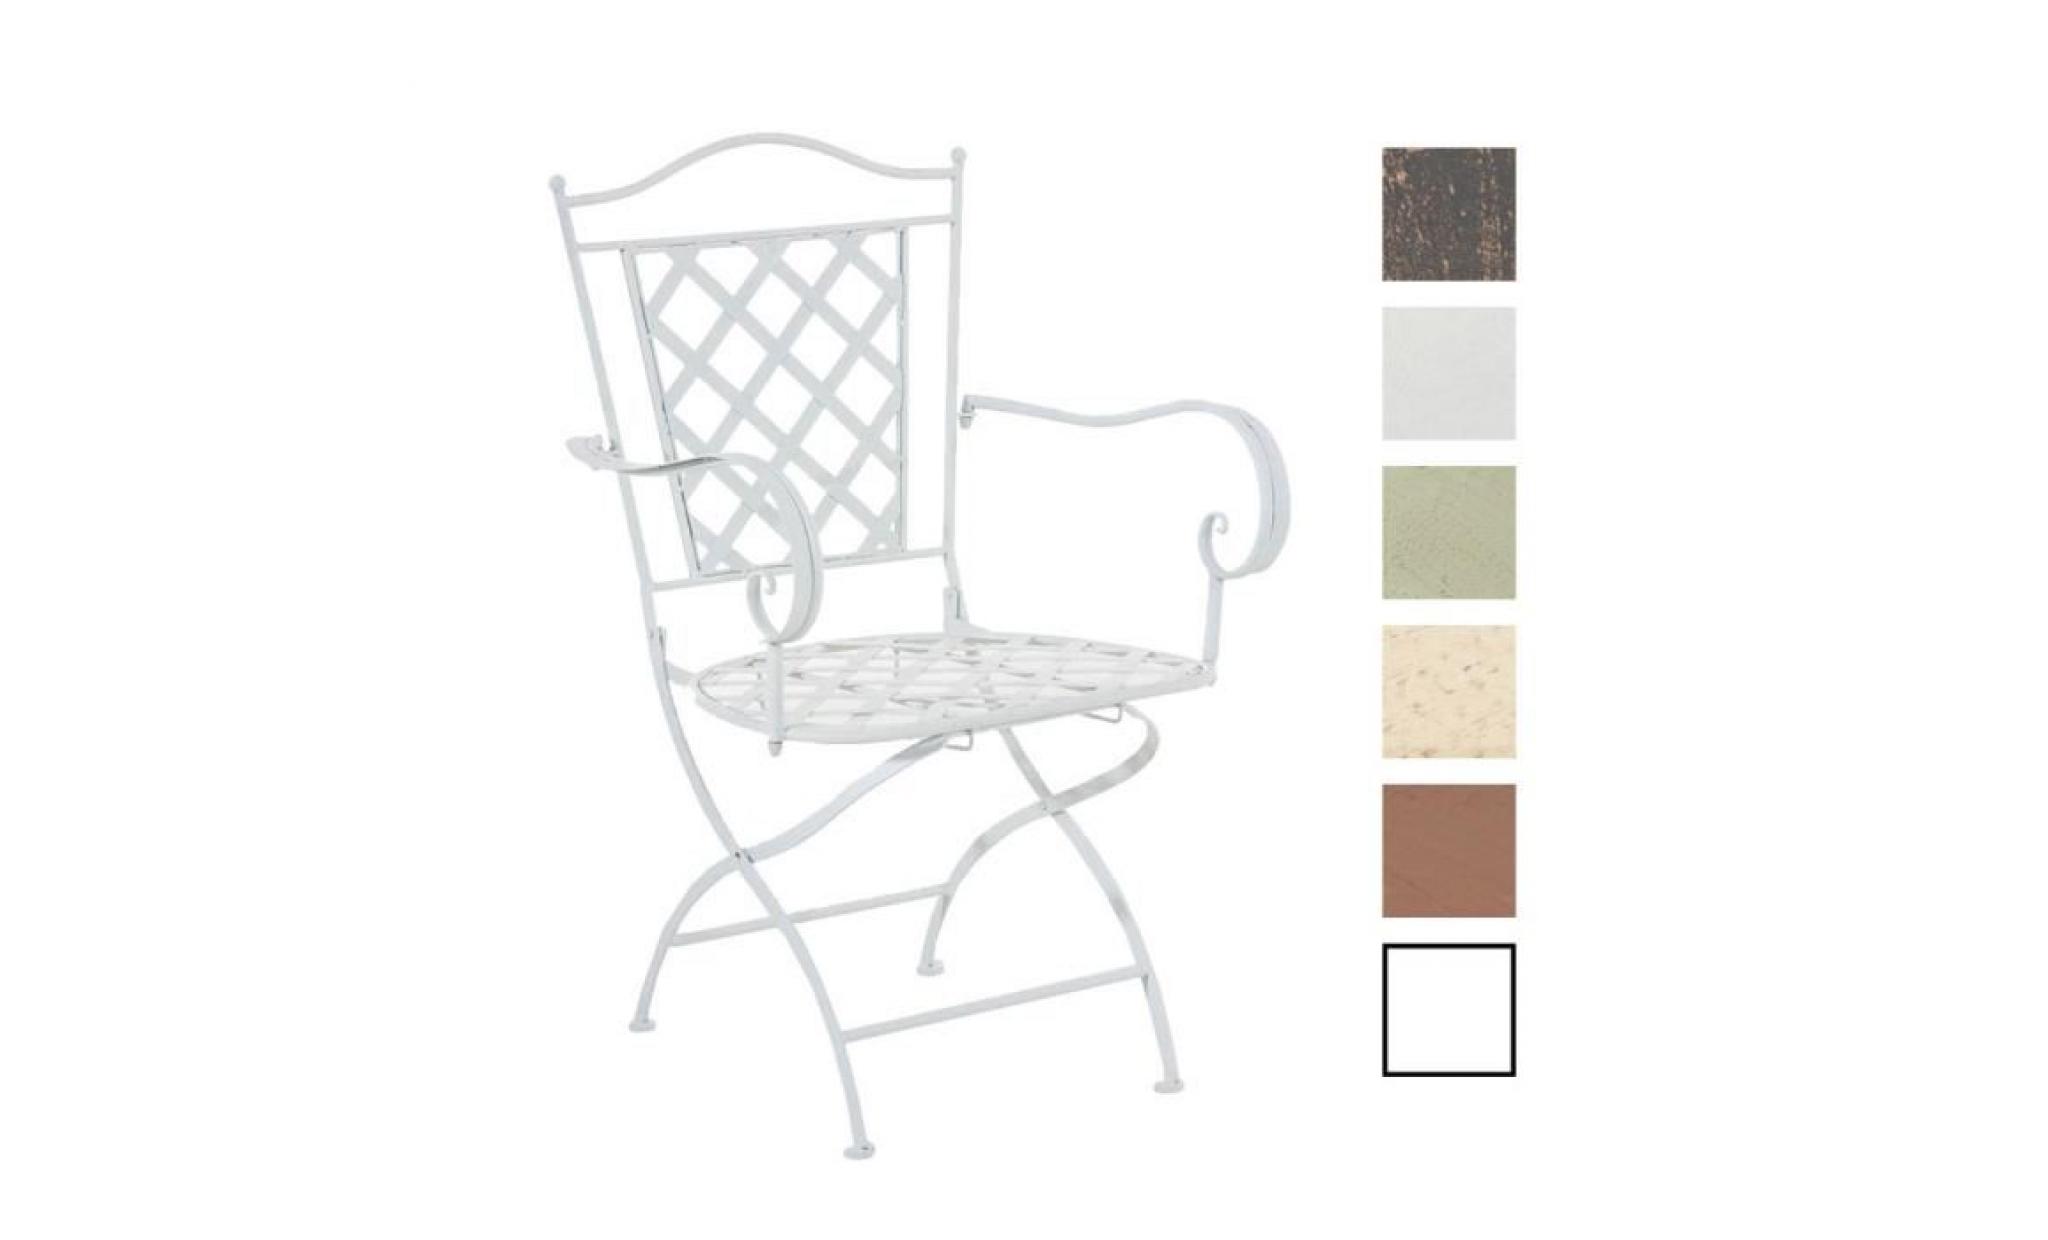 clp chaise nostalgique adara en fer forgé, chaise pliable,  jsuqu'à 6 couleurs au choix